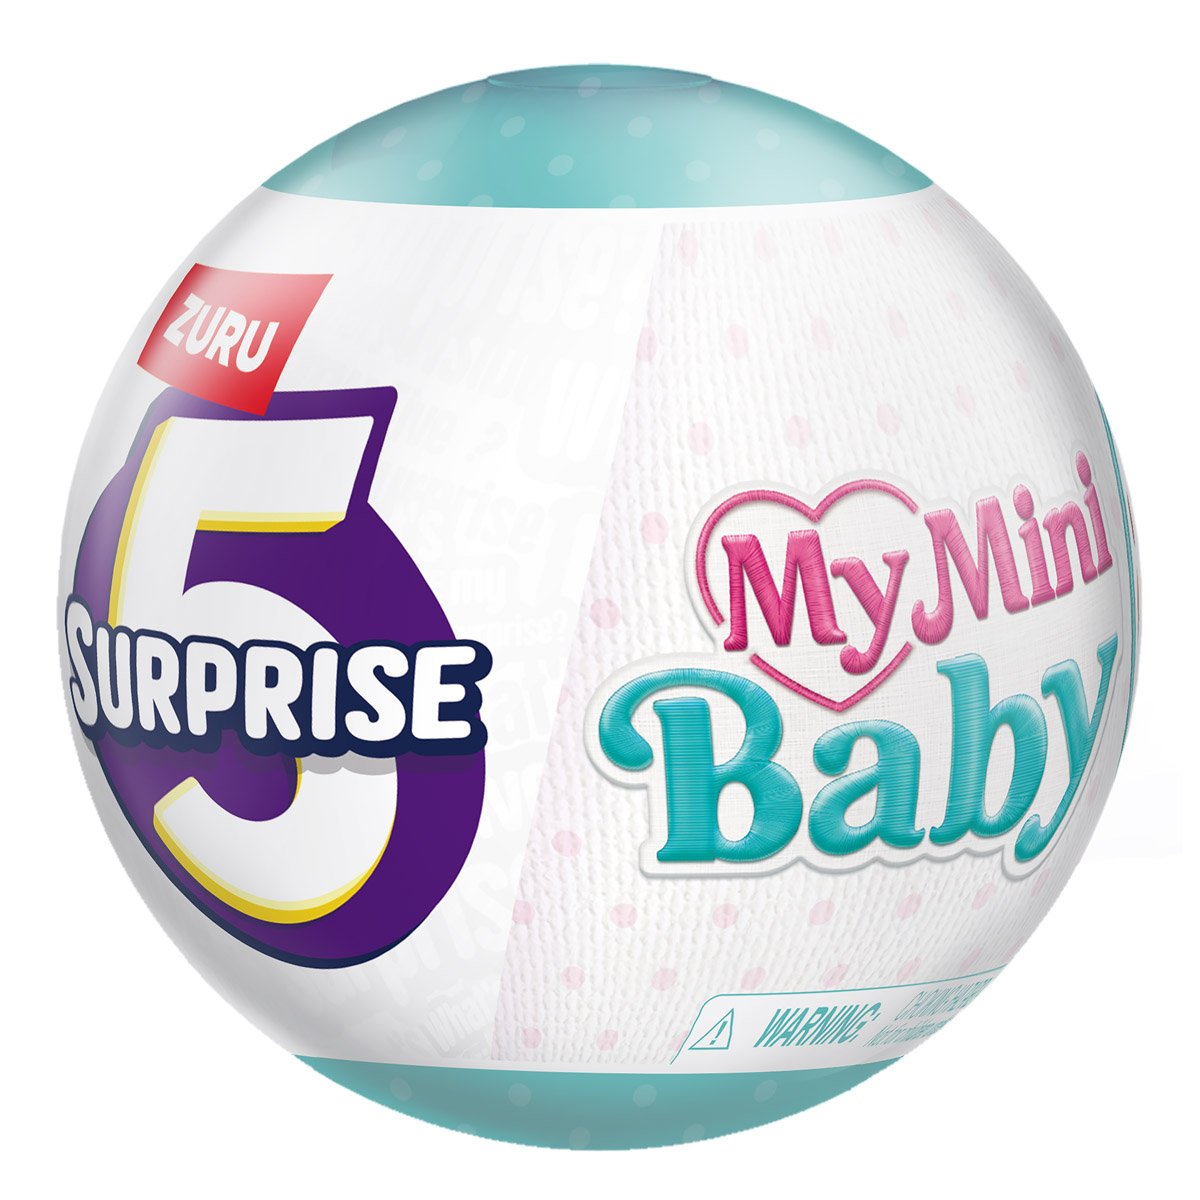 New zuru 5 surprise My Mini Baby!👶🏼 @ZURU Toys #myminibaby #zuru